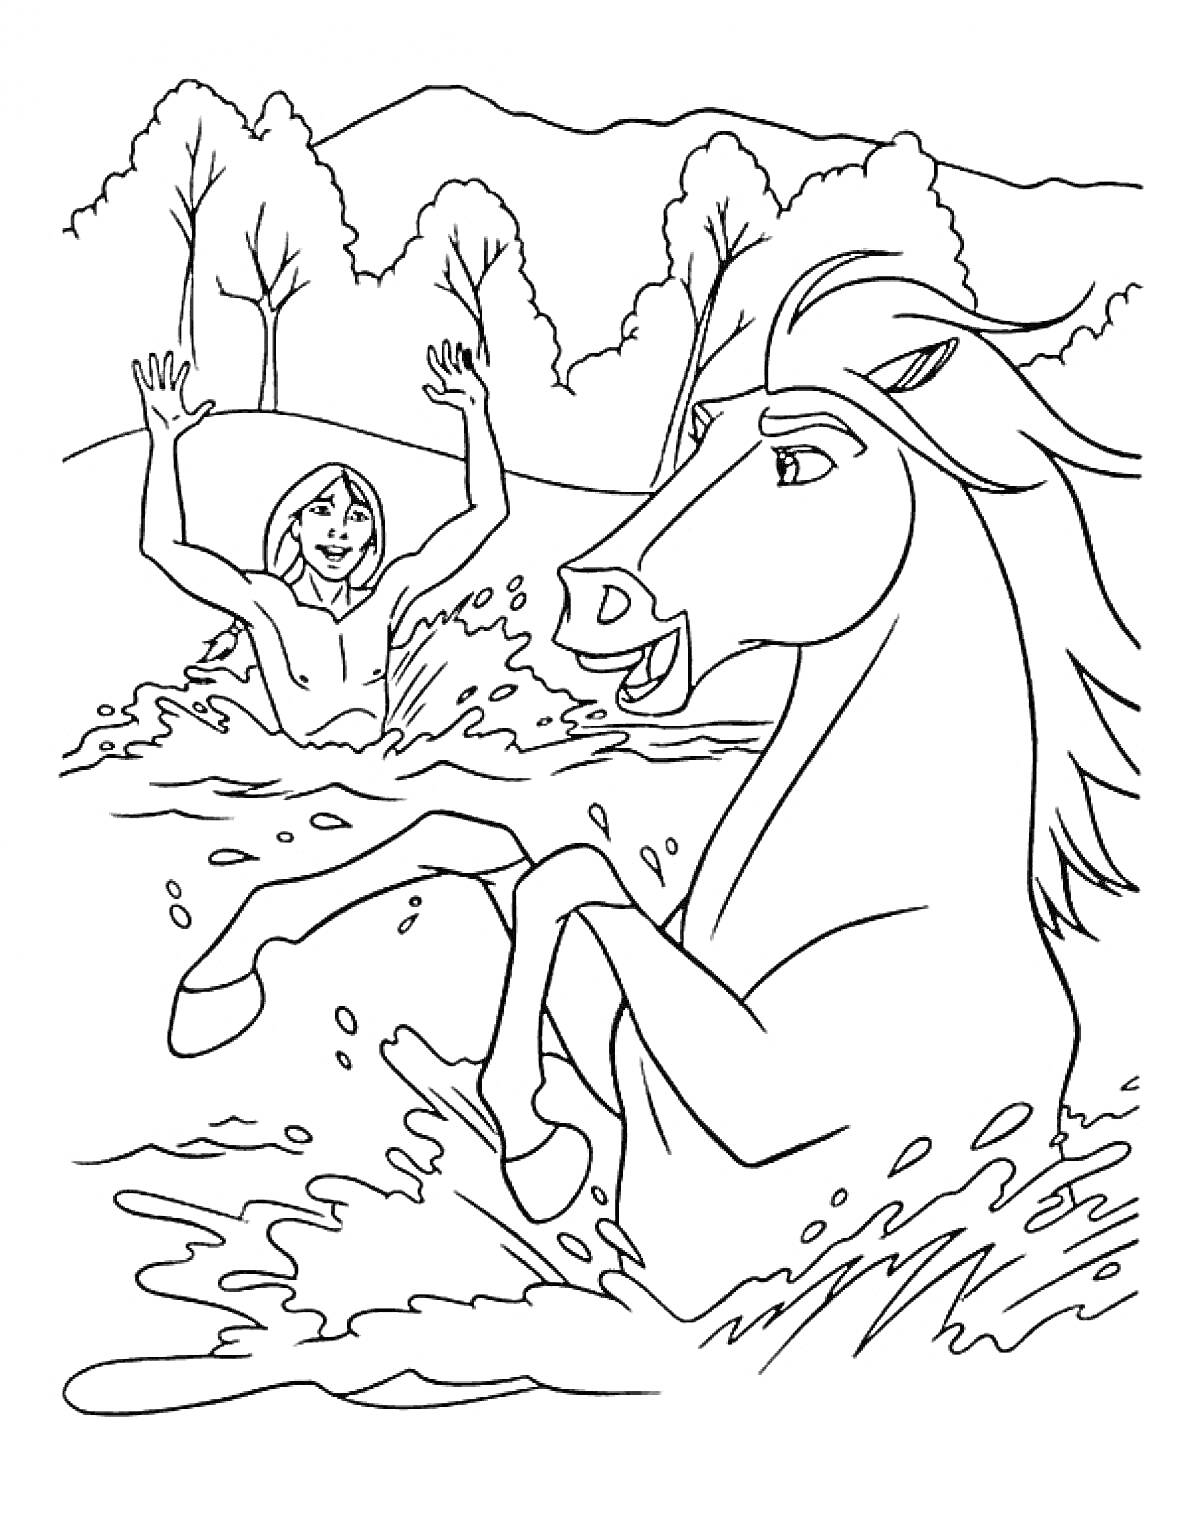 Раскраска Человек в воде с поднятыми руками и лошадь, стоящая на задних ногах в реке на фоне деревьев и холмов.